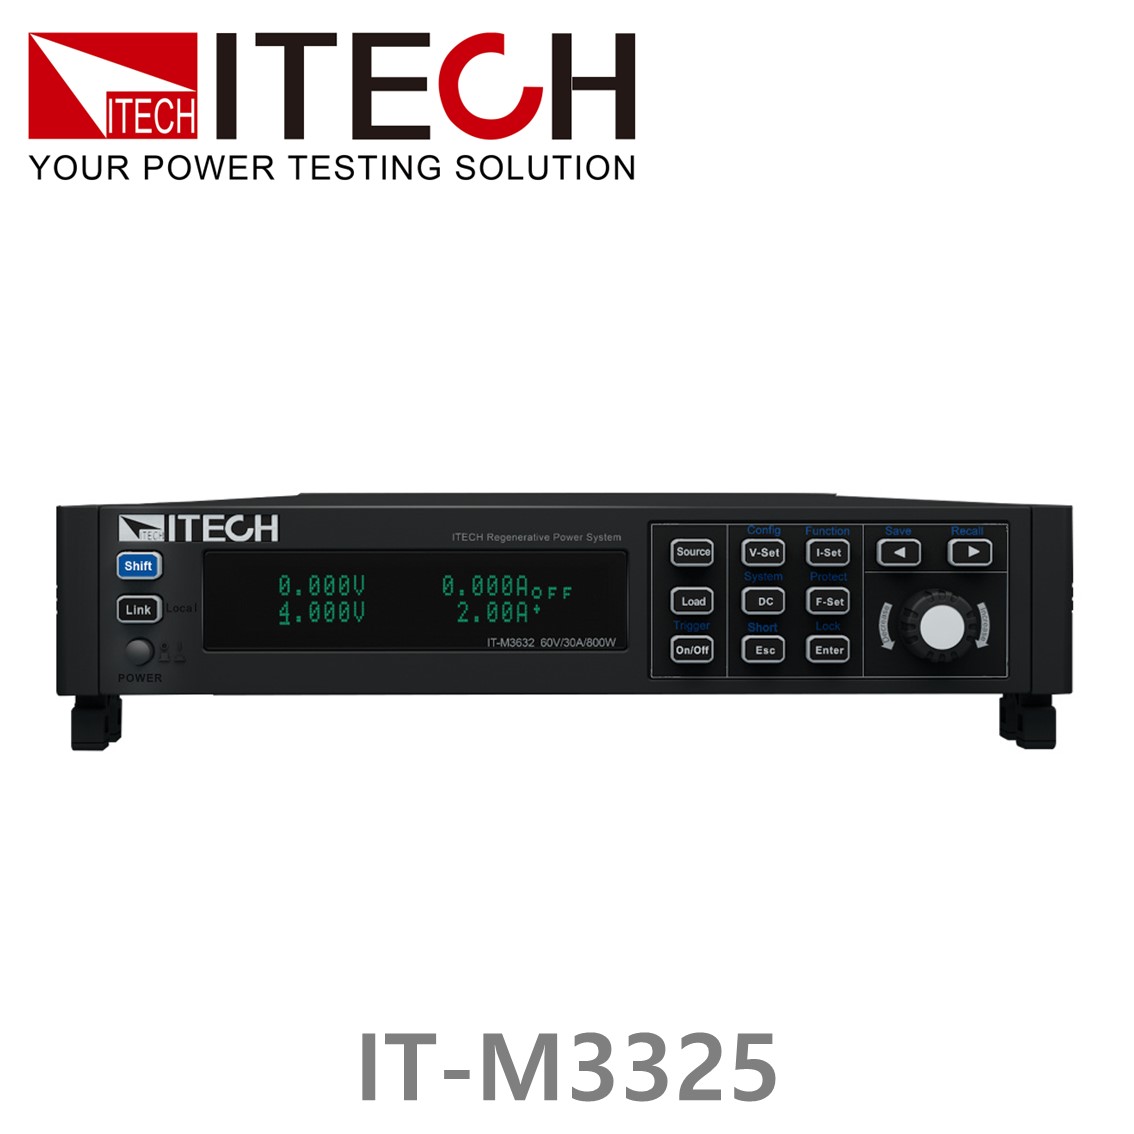 [ ITECH ] IT-M3325 DC전자부하기 (600V/3A/400W), DC전자로드